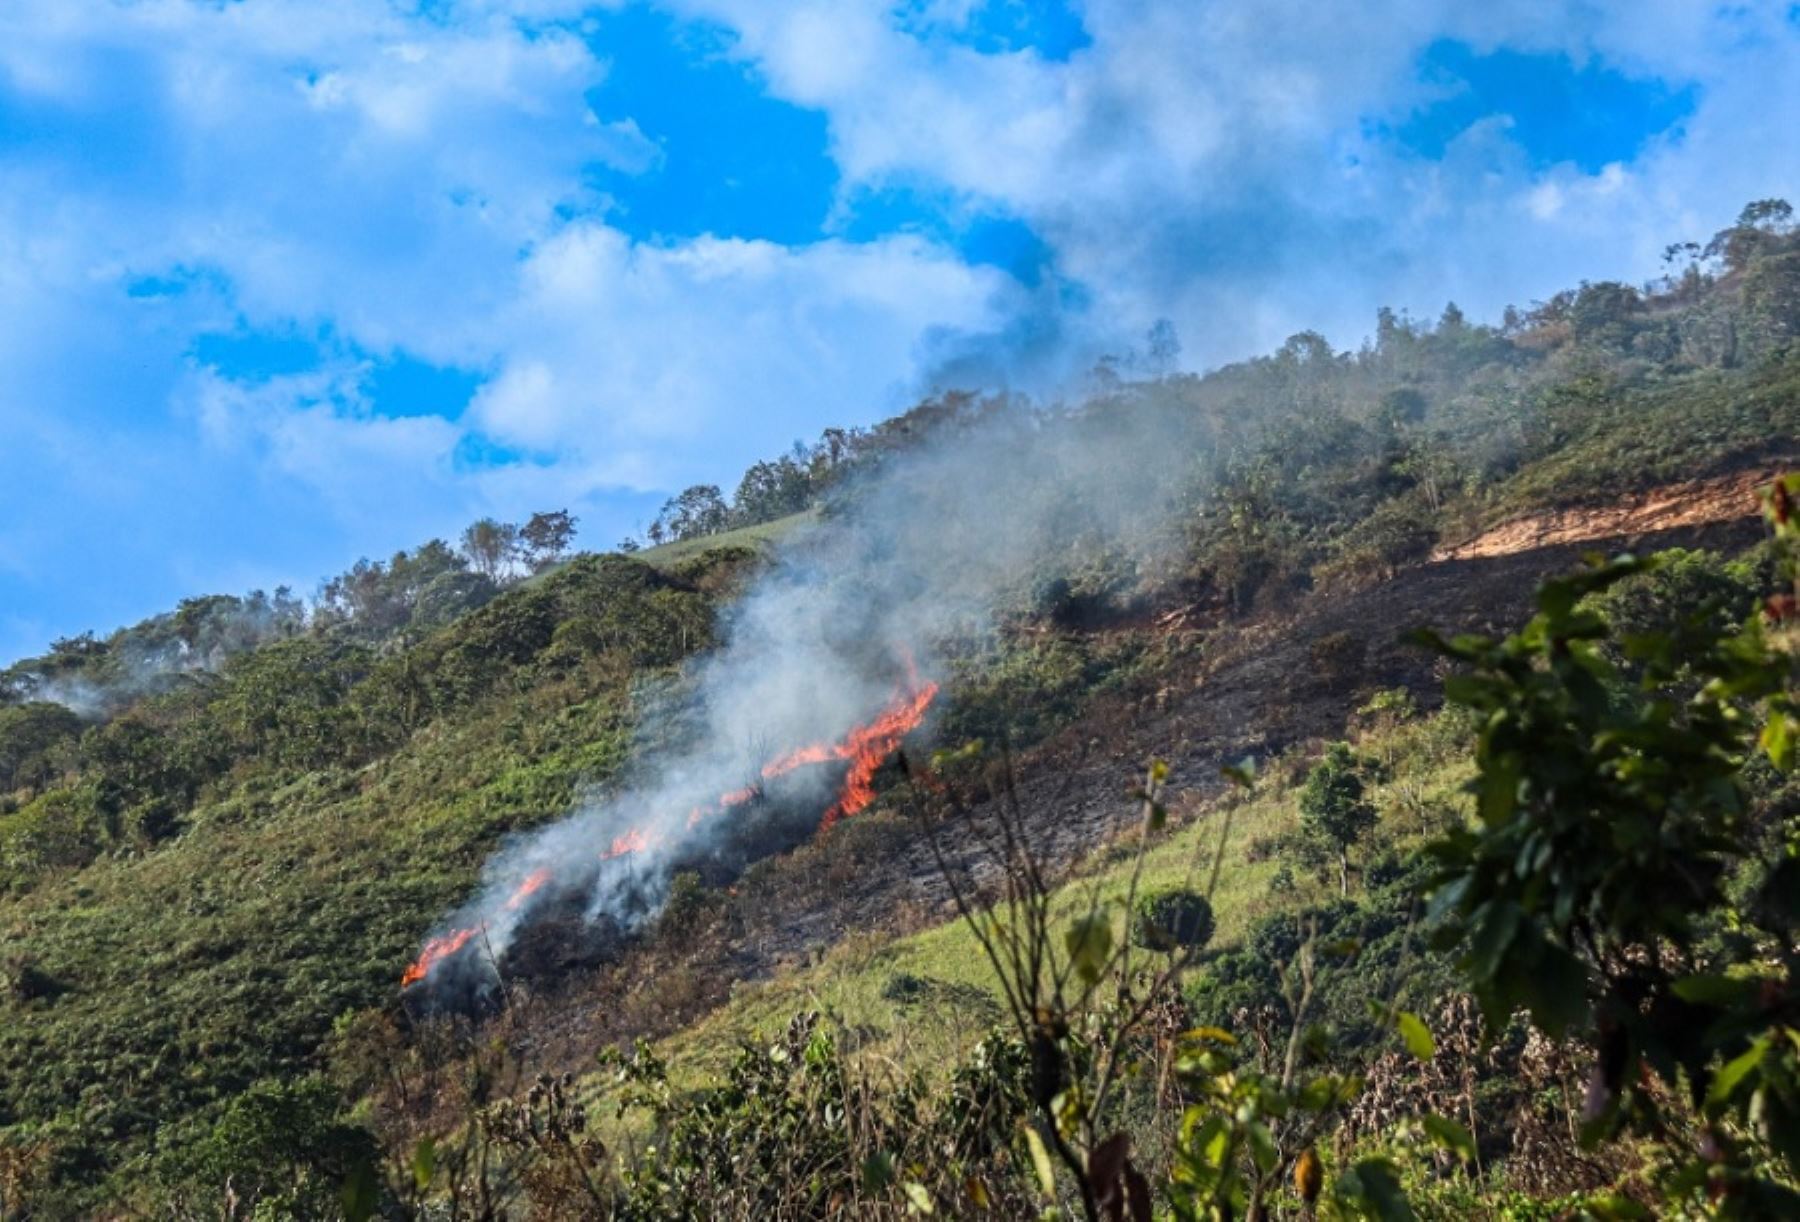 Un incendio forestal se registra en Arequipa, en el sector de Liguay - Callimarca, en el distrito de Cabanaconde, en la provincia de Caylloma, informó el Centro de Operaciones de Emergencia Regional.  ANDINA/Difusión